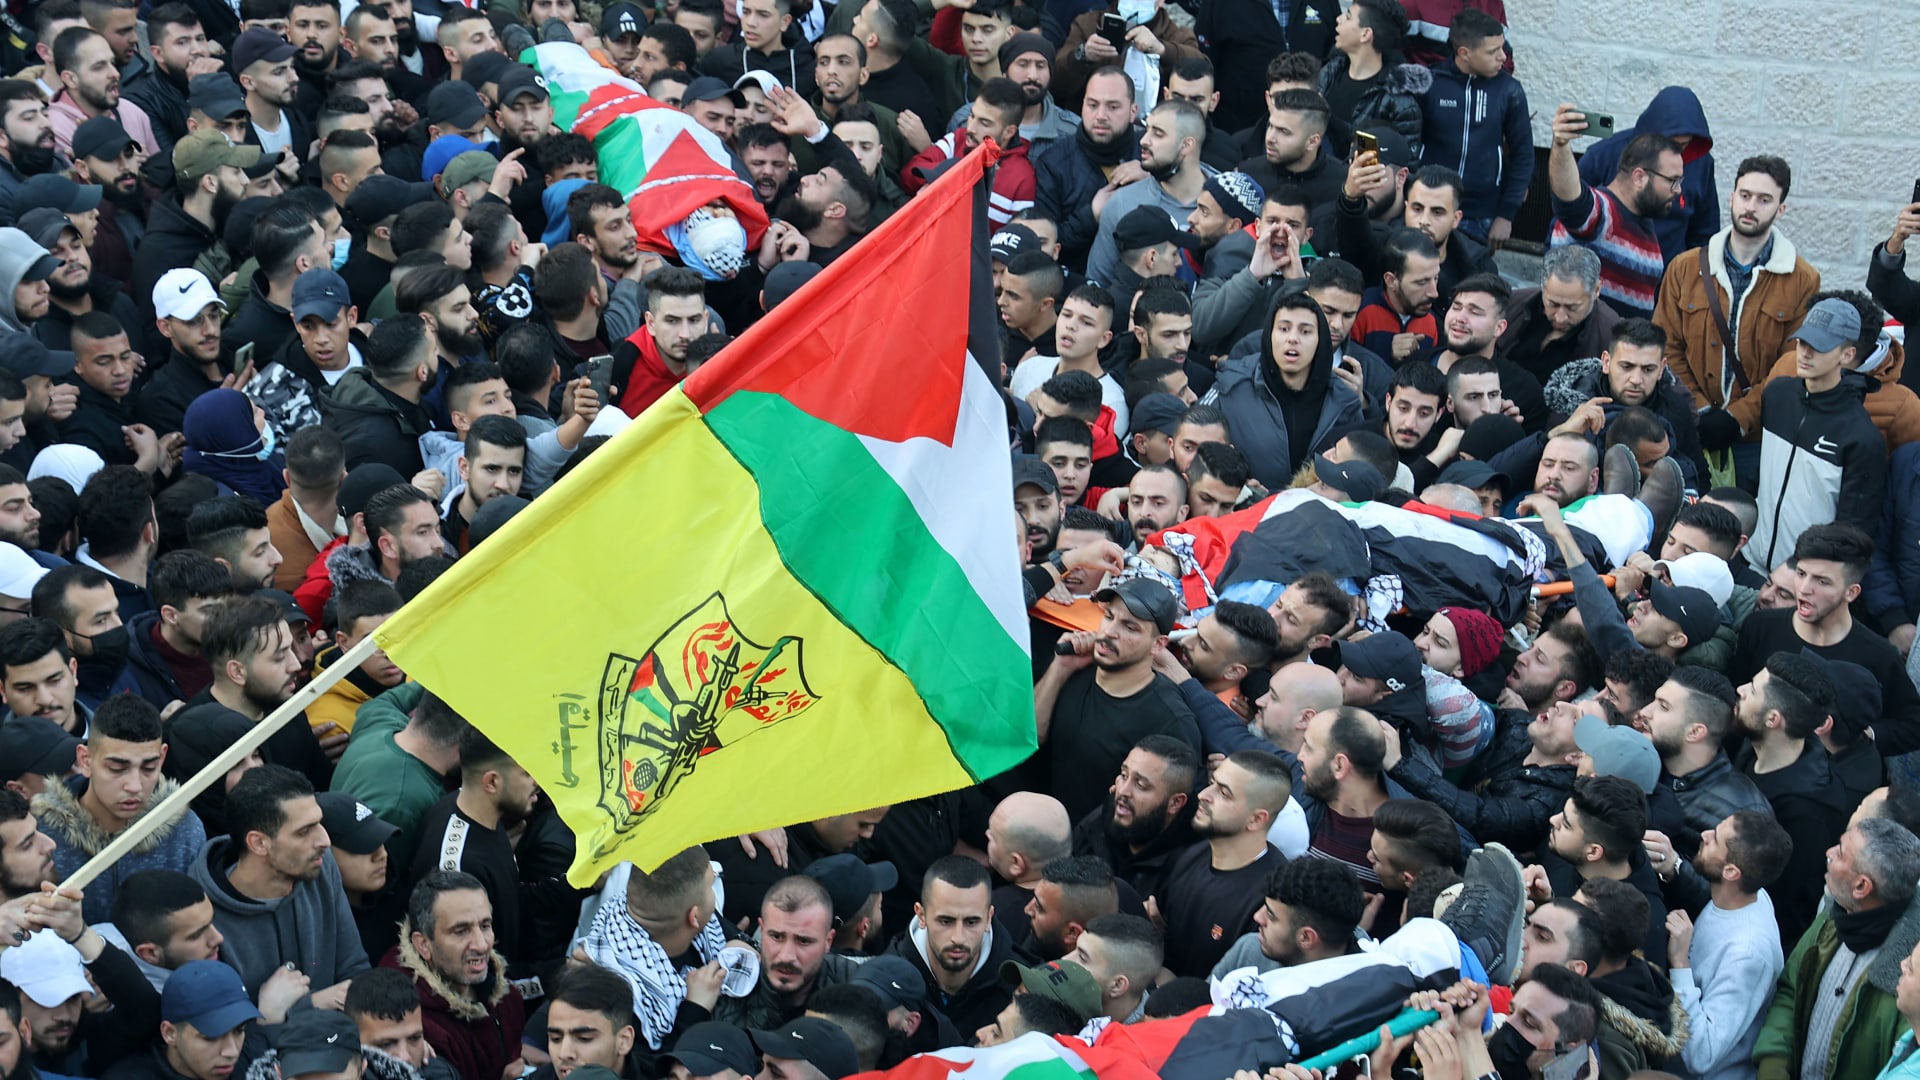 مشيعون يحضرون جنازة ثلاثة فلسطينيين قتلوا برصاص القوات الإسرائيلية خلال مداهمة ما وصفته إسرائيل بـ "خلية إرهابية"، في 8 فبراير 2022 في مدينة نابلس بالضفة الغربية.